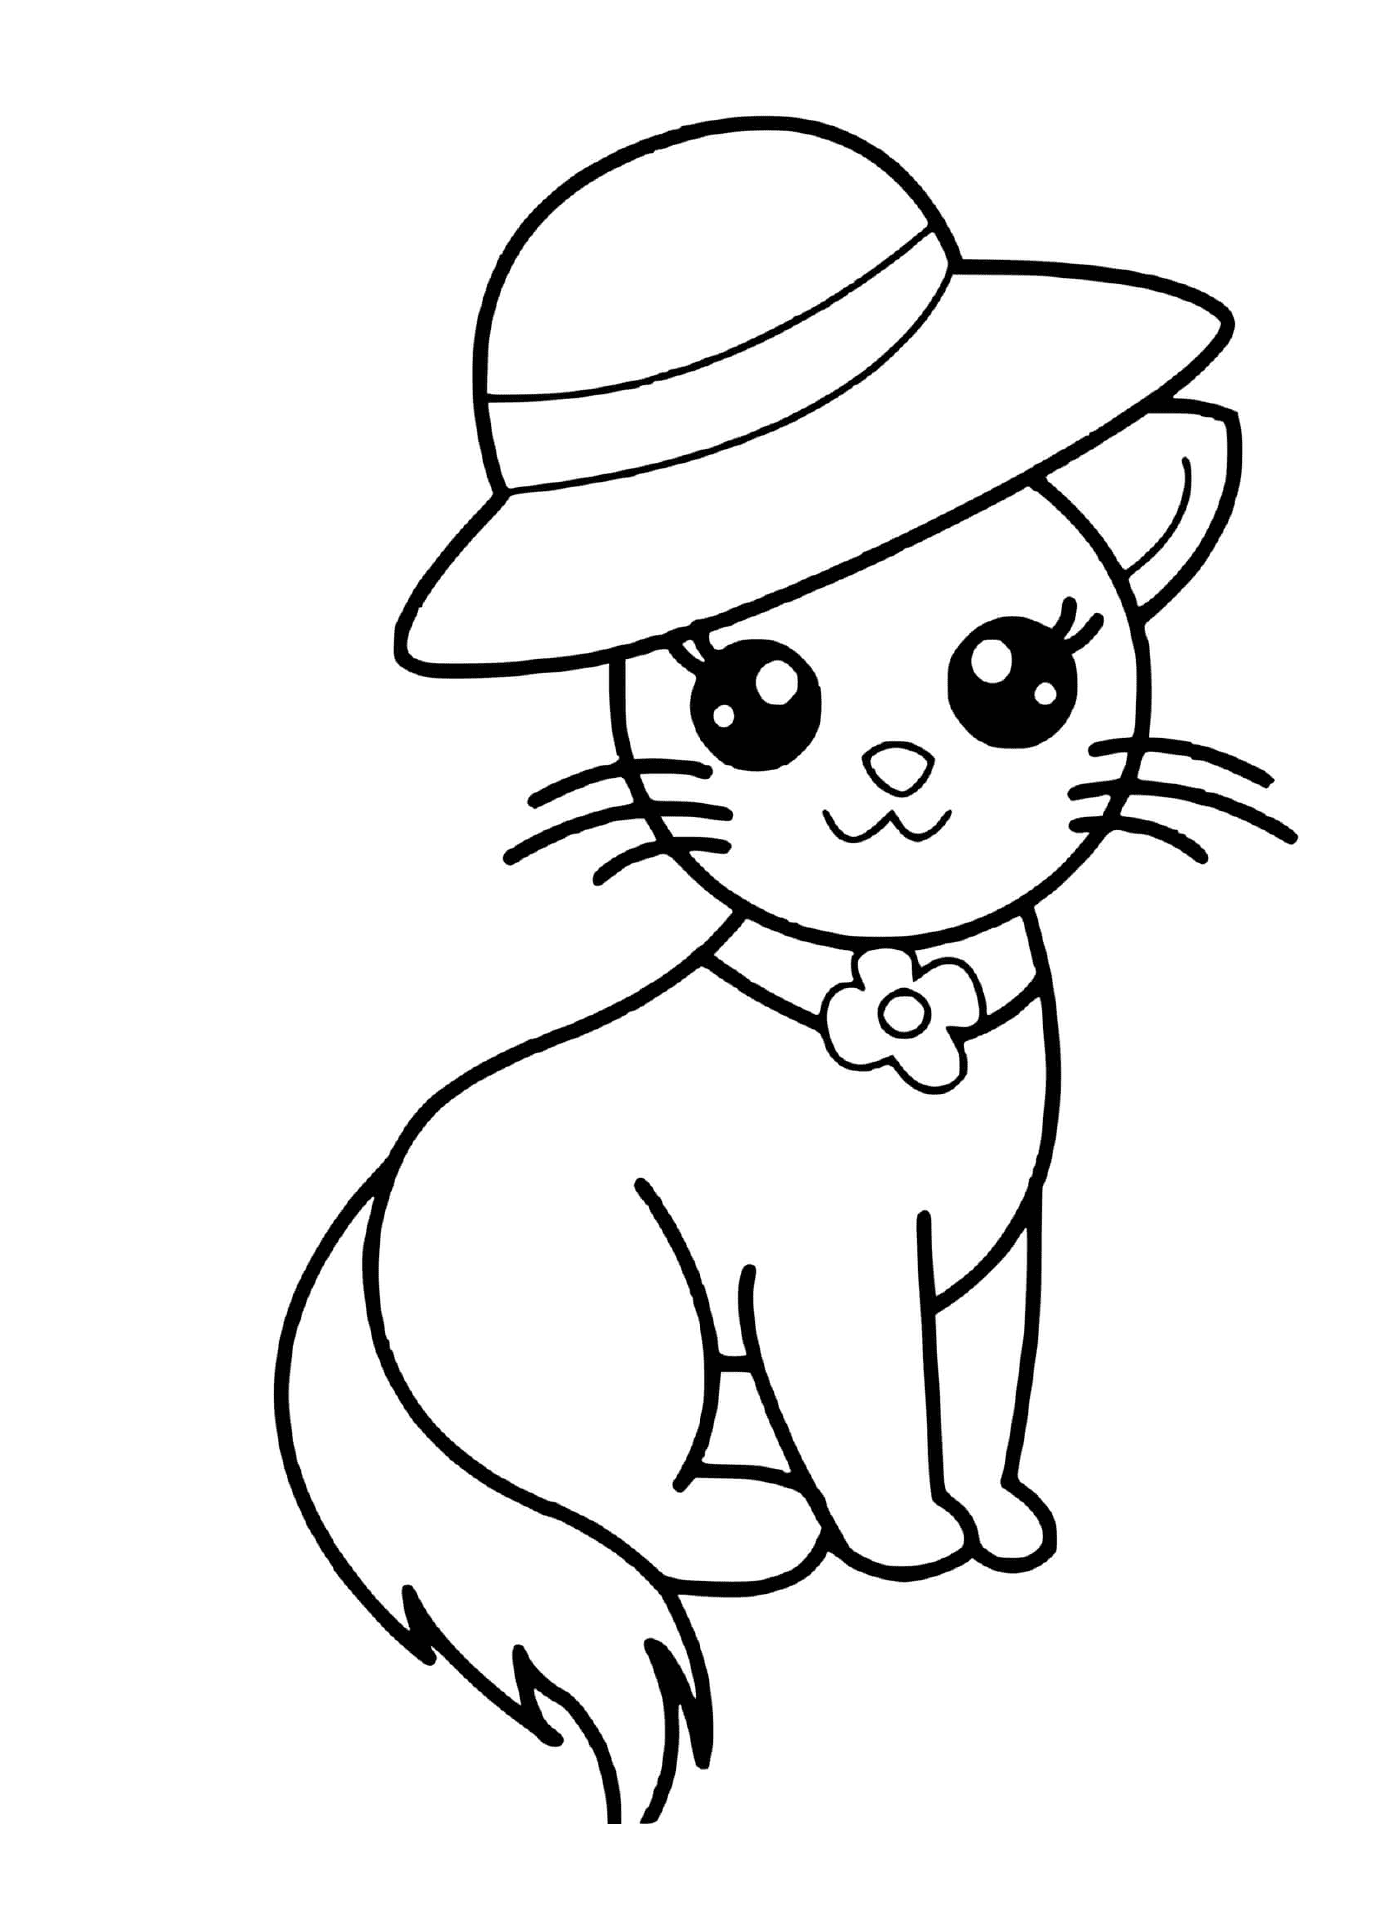  अमेता कावा बिल्ली एक चिंची टोपी के साथ 